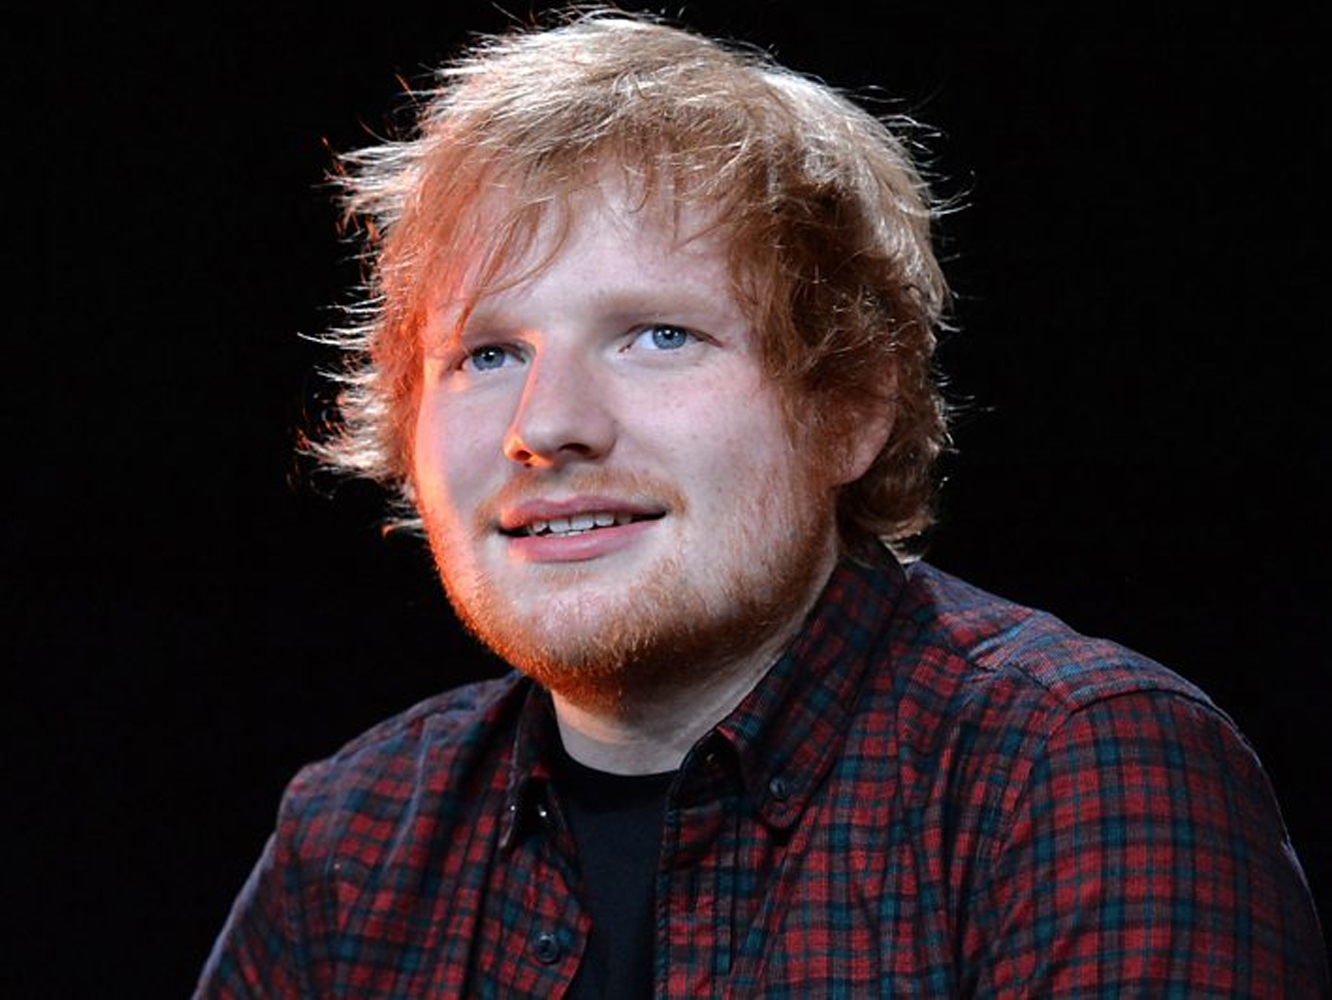  Ed Sheeran deja caer que está fuera de los principales Grammys por que había que nominar a negros